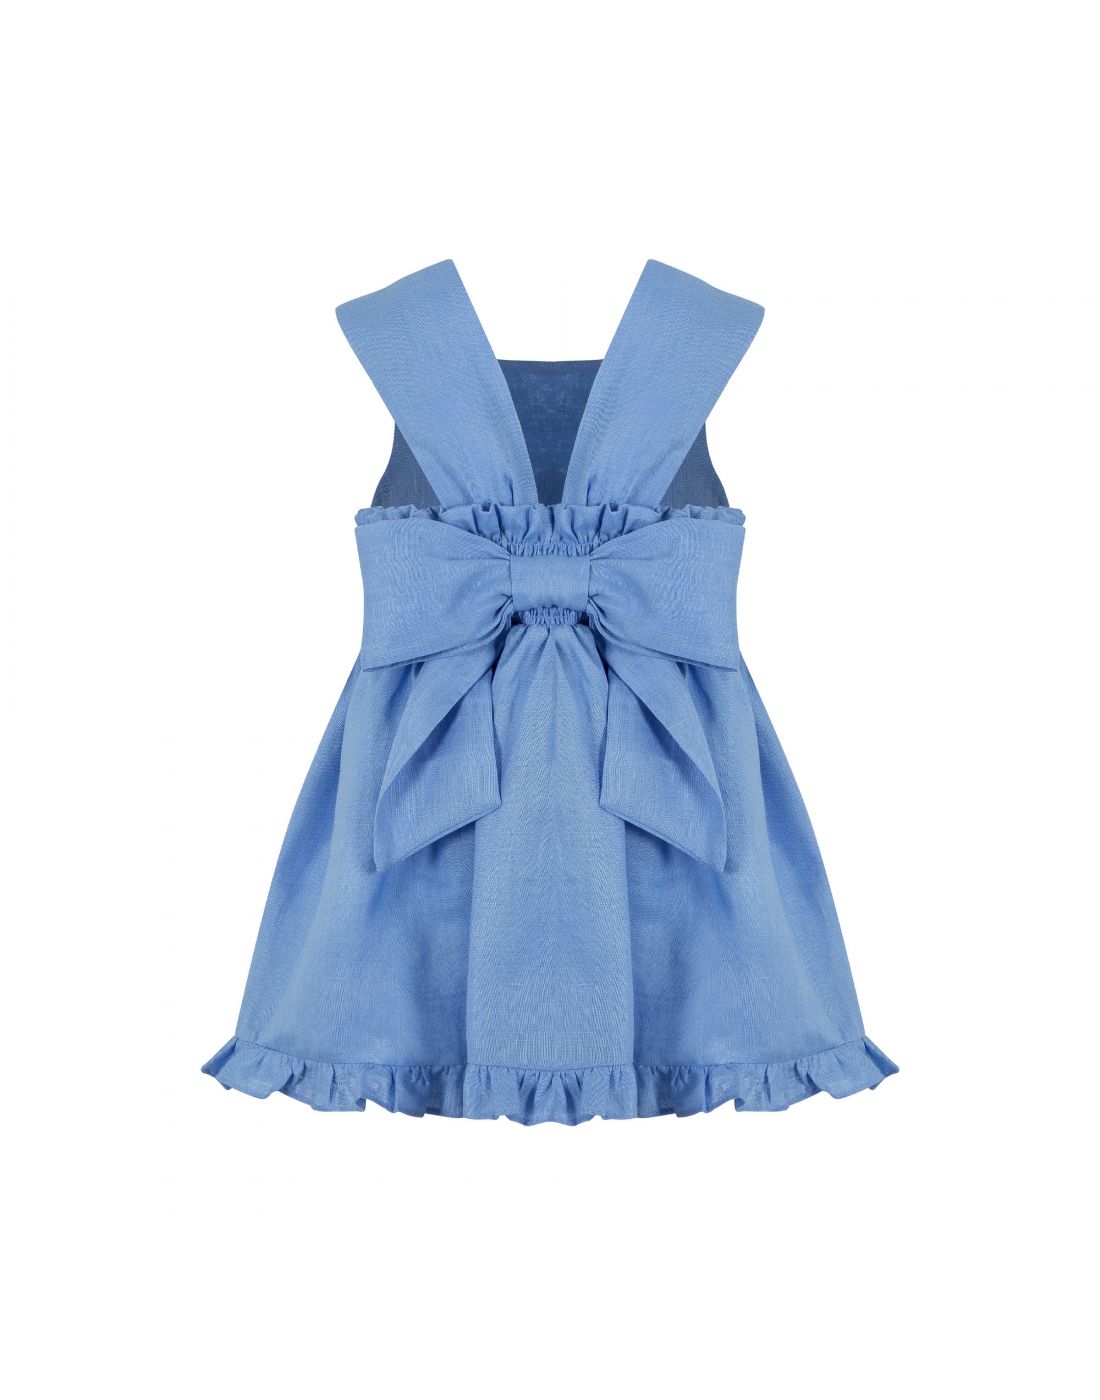 Παιδικό Φόρεμα Lapin House, Lapin House, 241E3225 | LapinKids.com | LAPIN  KIDS